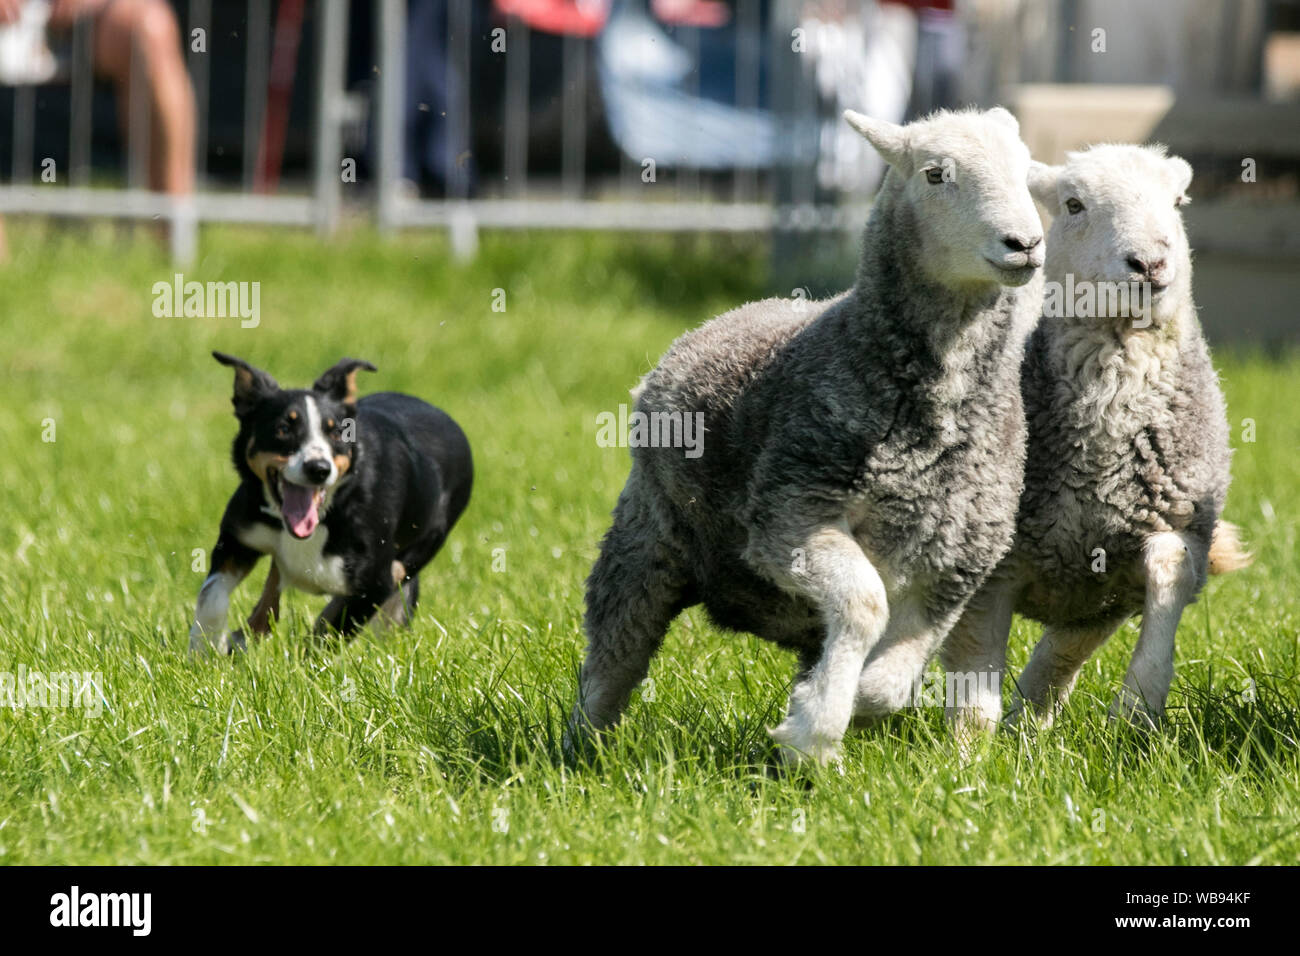 Une exposition de troupeaux de chiens de brebis de collie à la frontière Lake District Herdwick Sheep au salon Chipping Agriculture à Lancashire, Royaume-Uni Banque D'Images